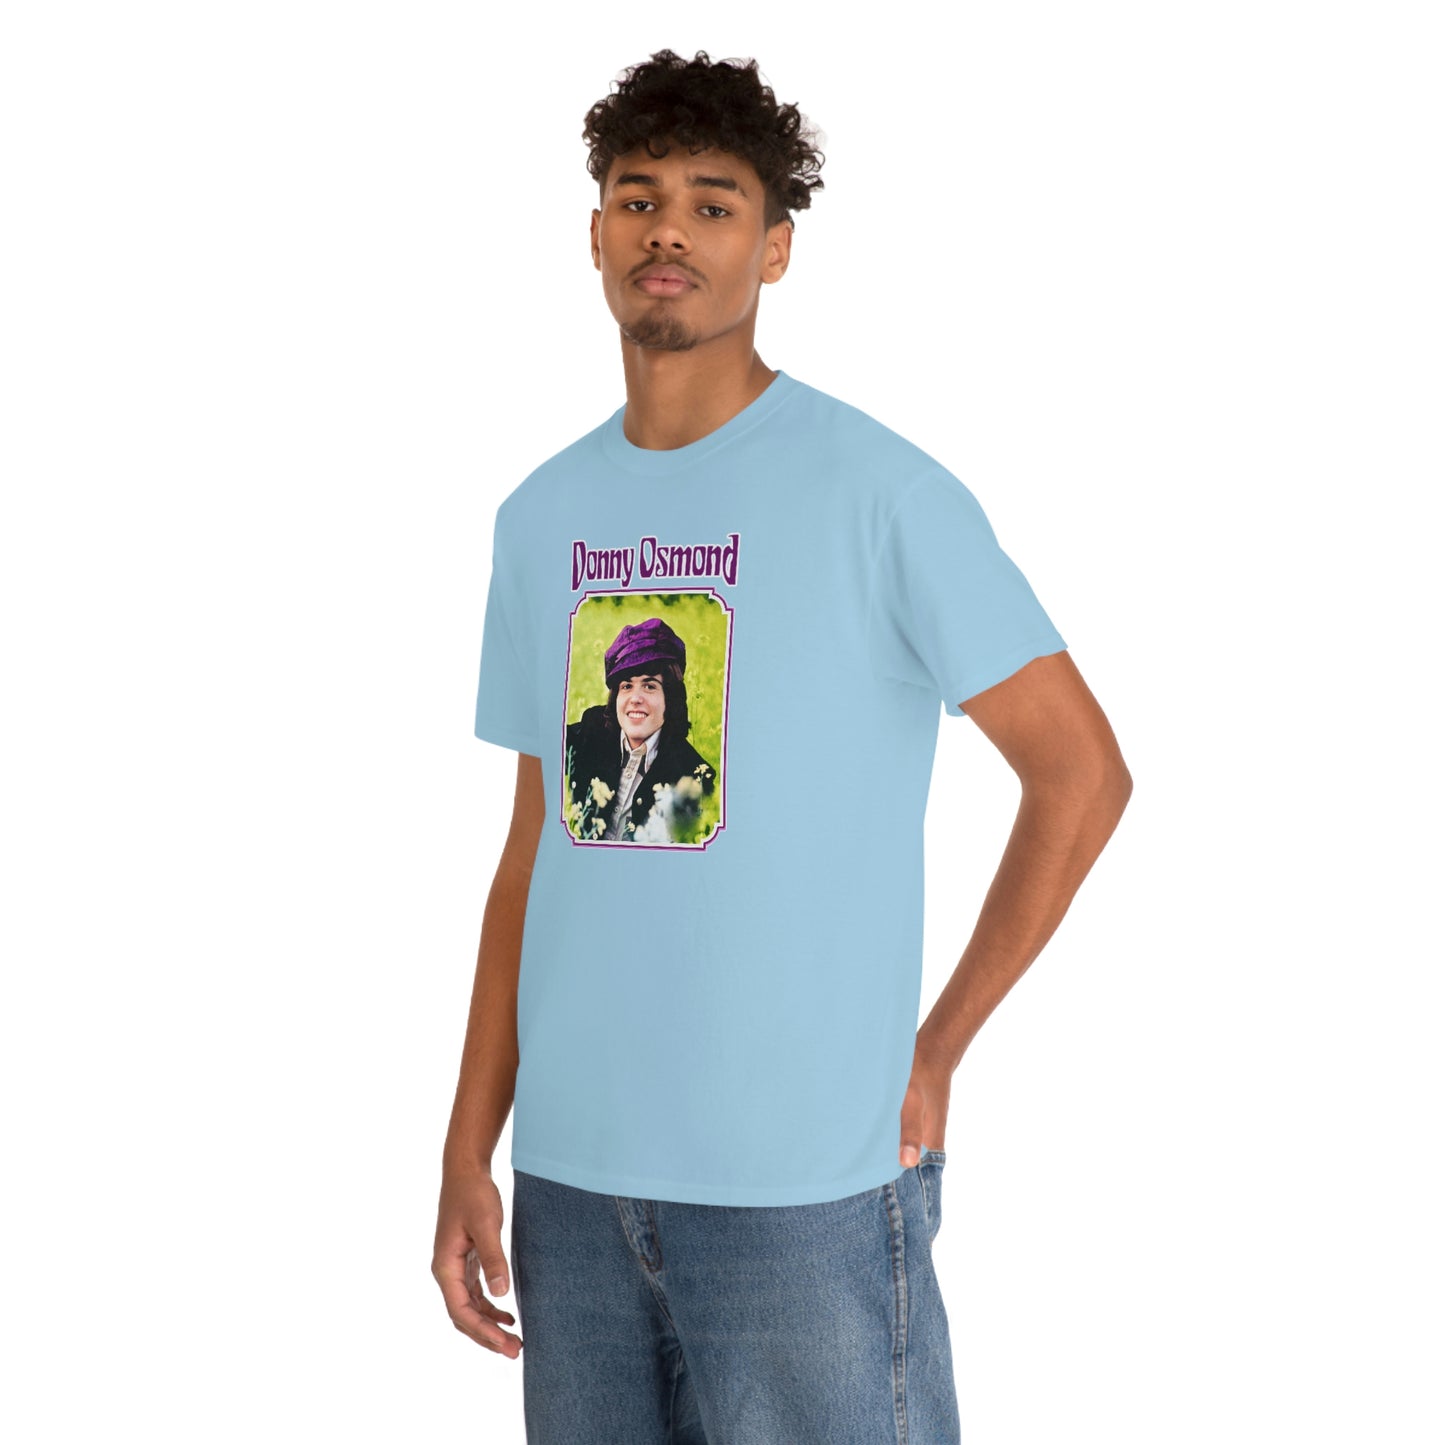 Donnie Osmond T-Shirt